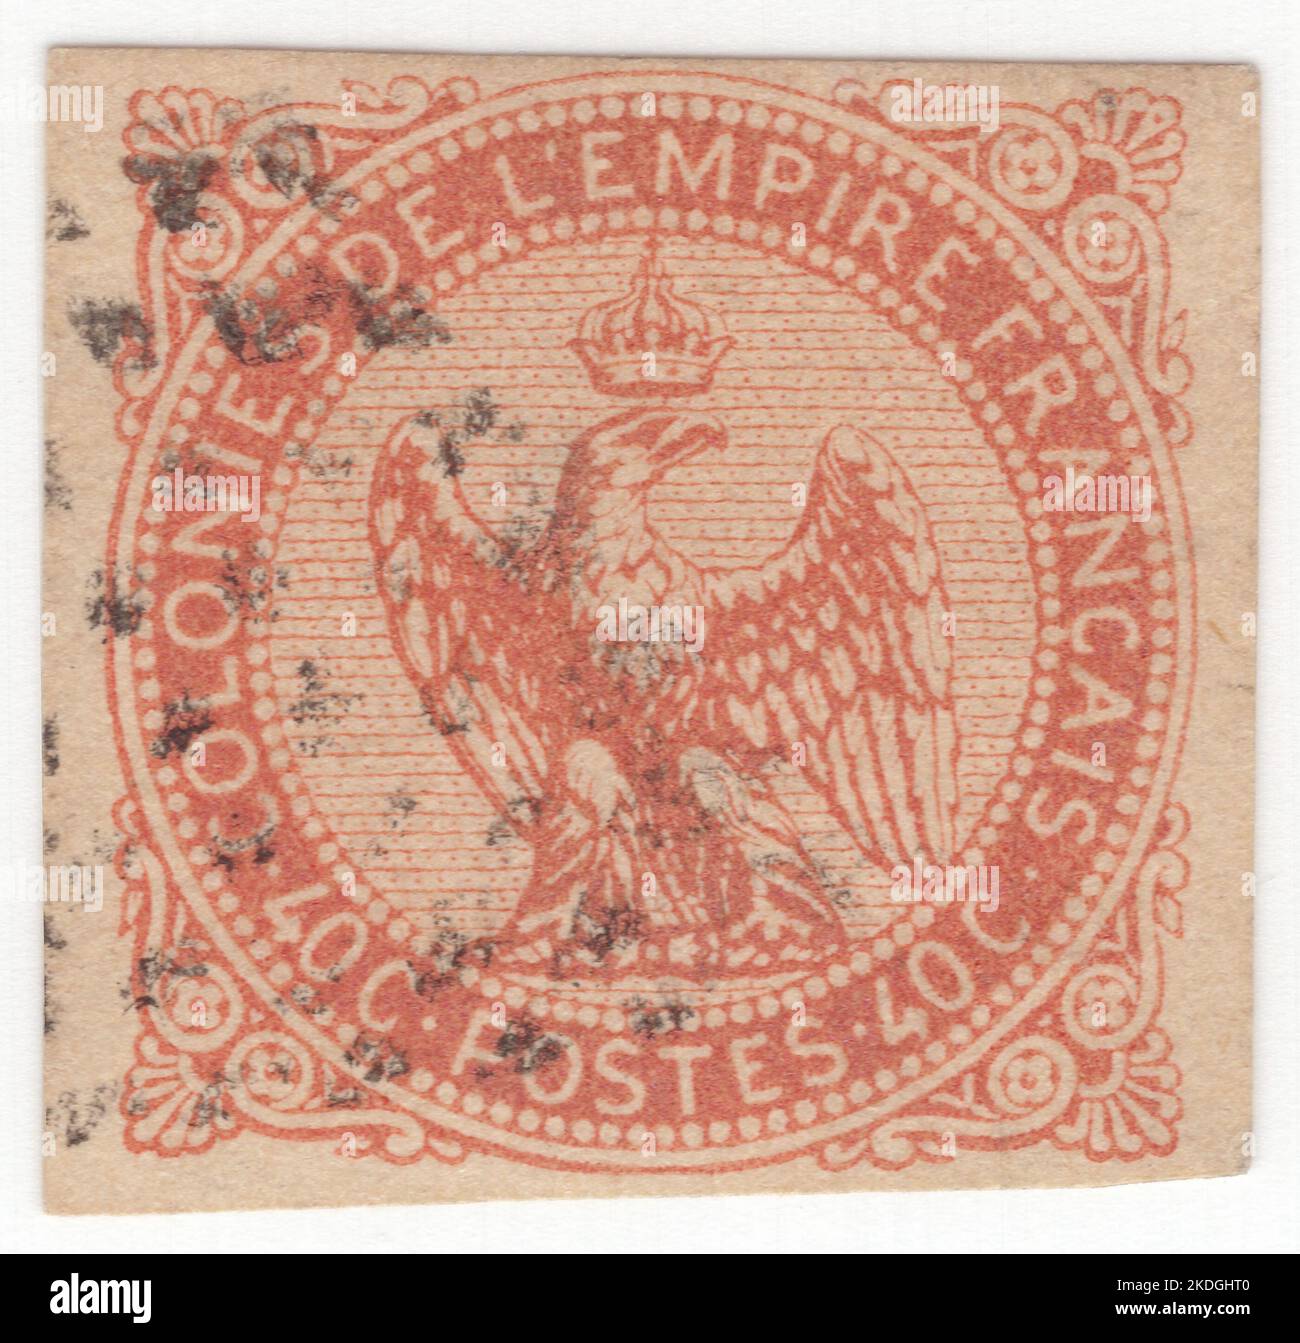 FRANZÖSISCHE KOLONIEN - 1859: Eine 40 Centimes orange auf gelblicher Briefmarke, die Adler mit einem Donnerschlag und einer Krone zeigt, Hauptelemente des Wappens des Zweiten Französischen Reiches von Napoleon III Stockfoto